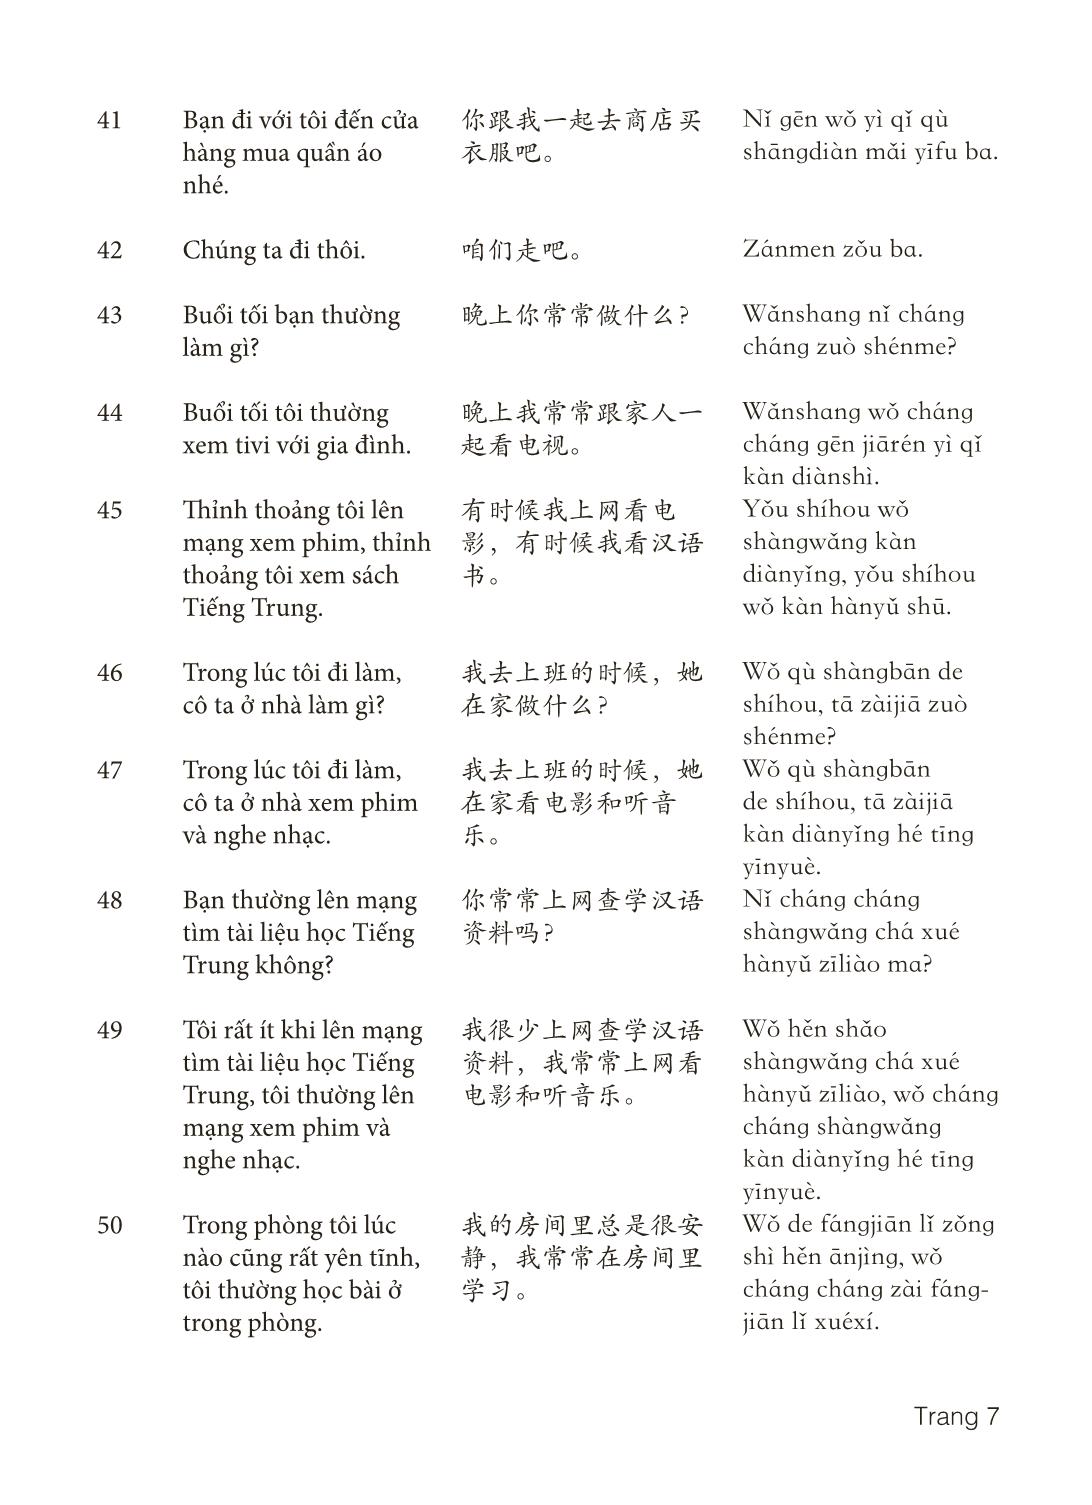 3000 Câu đàm thoại tiếng Hoa - Phần 30 trang 7